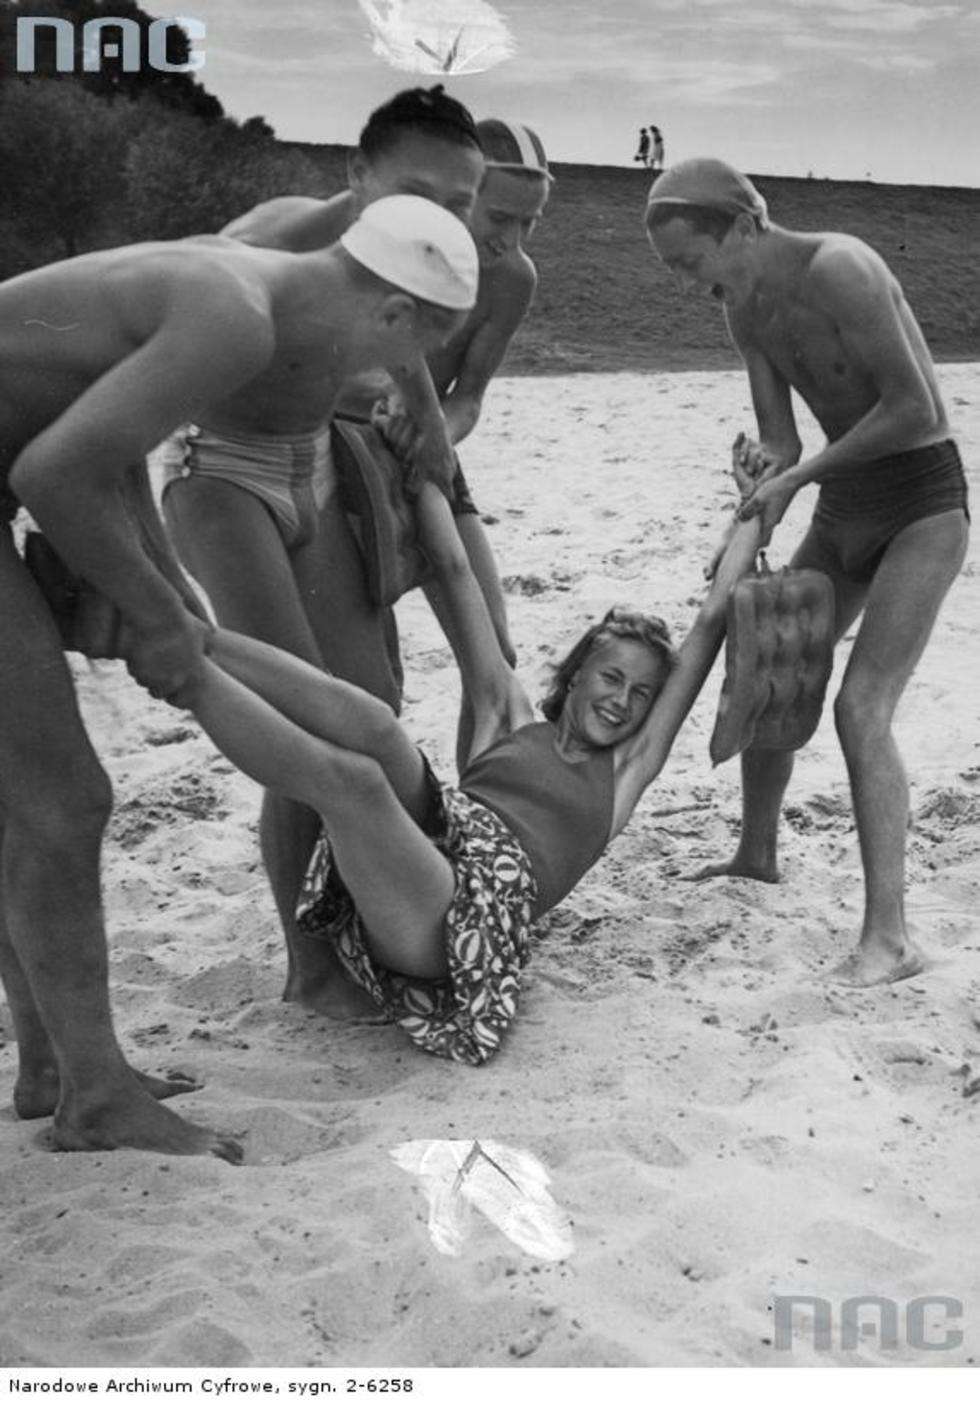  Kraków 1940 rok.  Pięć osób podczas zabawy na plaży nad Wisłą. Młodzi mężczyźni trzymają za ręce i nogi młodą kobietę. Fot. <a href="http://img.audiovis.nac.gov.pl/PIC/PIC_2-6258.jpg">NAC</a>